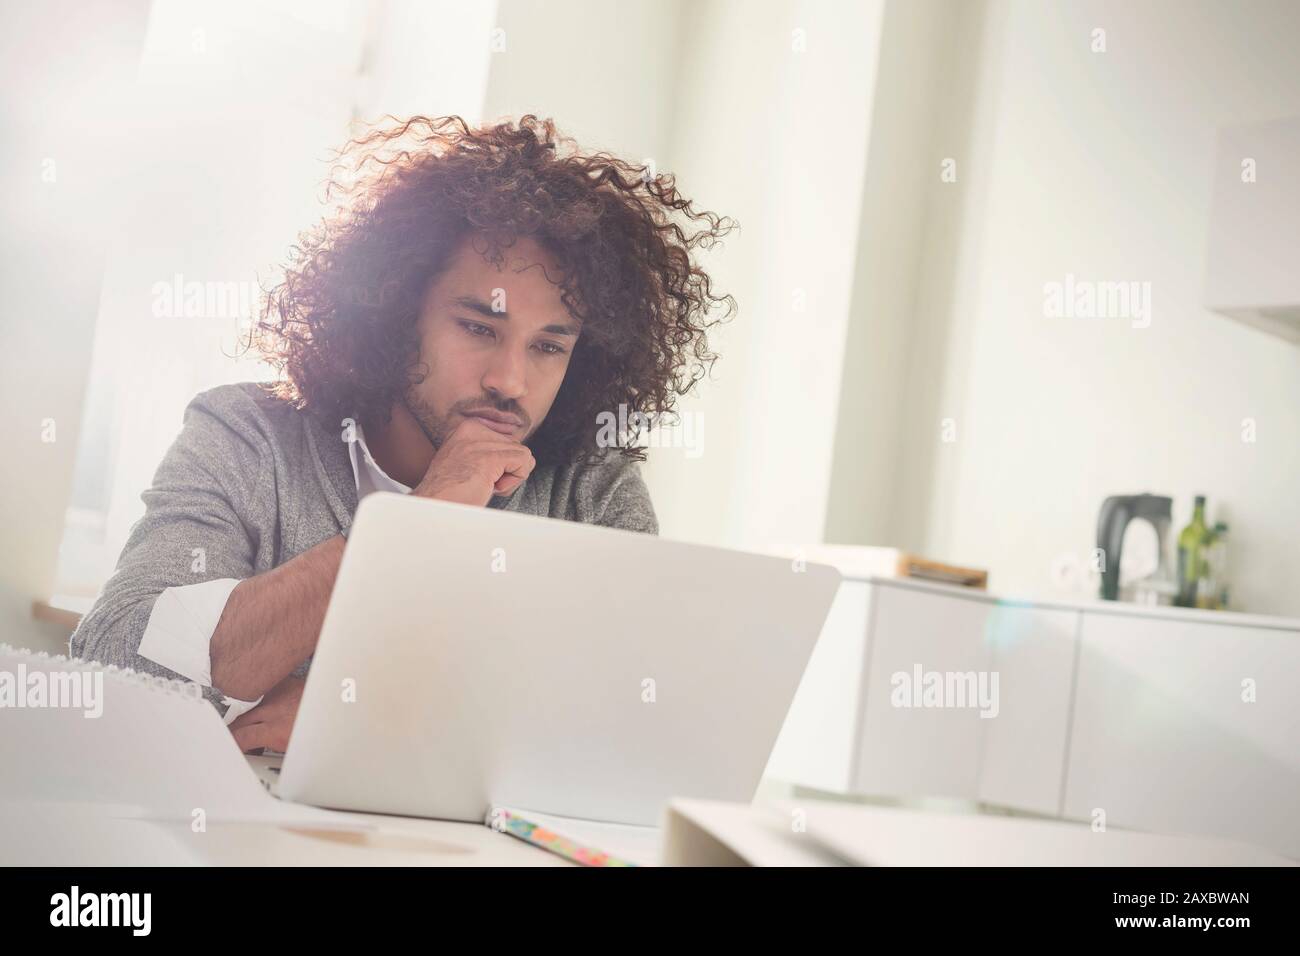 Un jeune homme concentré travaillant sur un ordinateur portable Banque D'Images